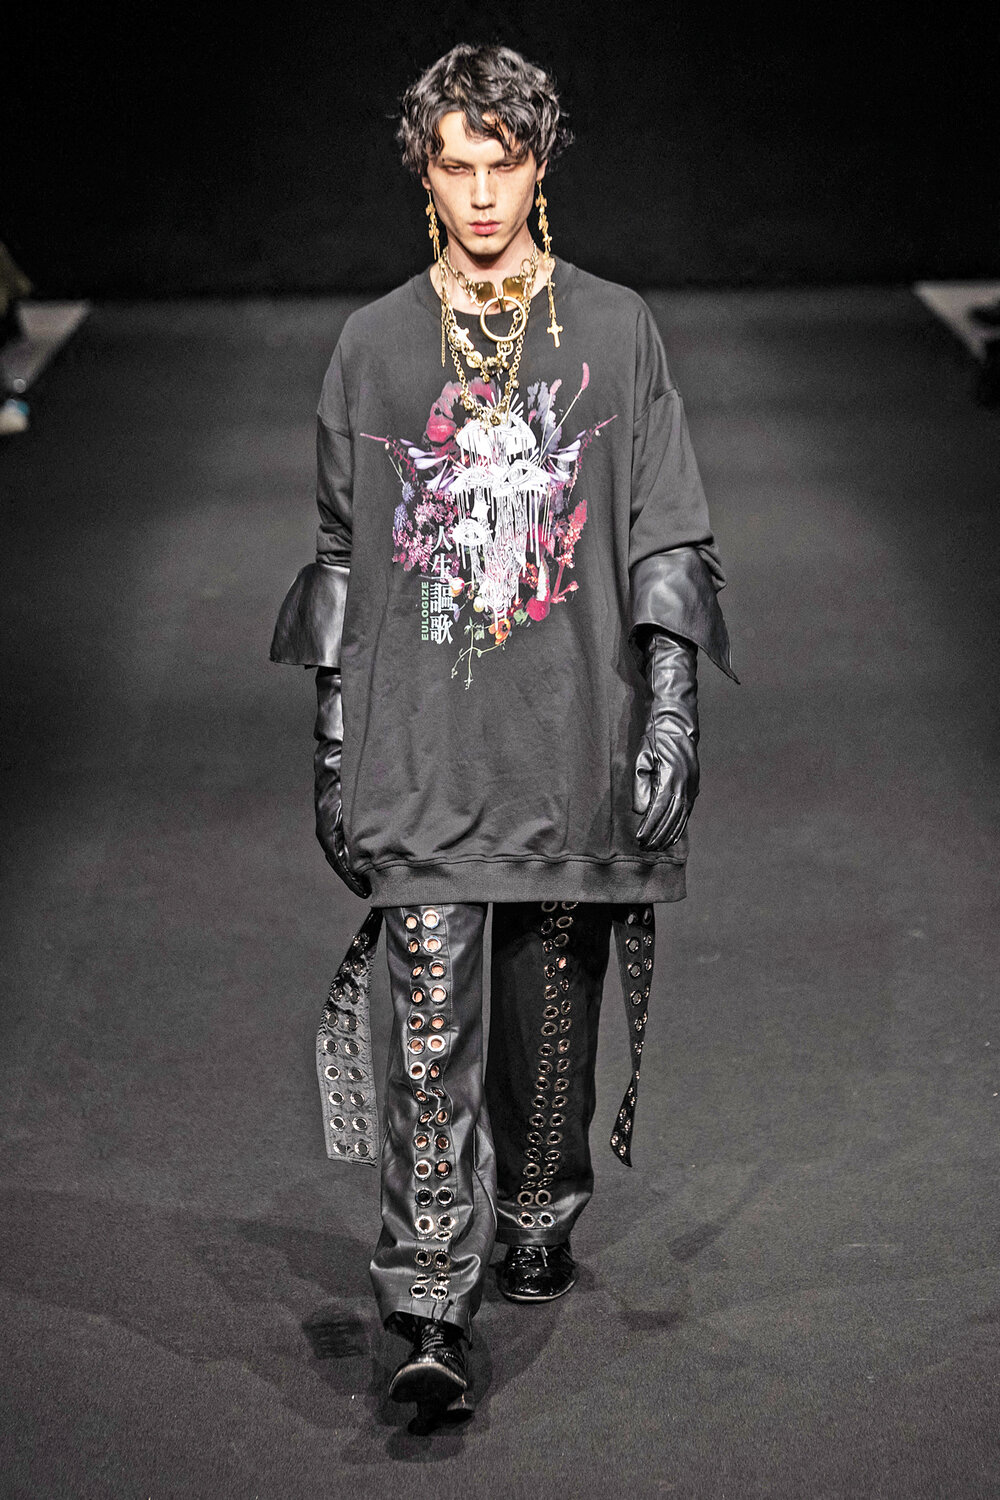 Diseños gothic chic se hicieron un lugar en la pasarela de la Semana de la Moda de Tokio. AFP 